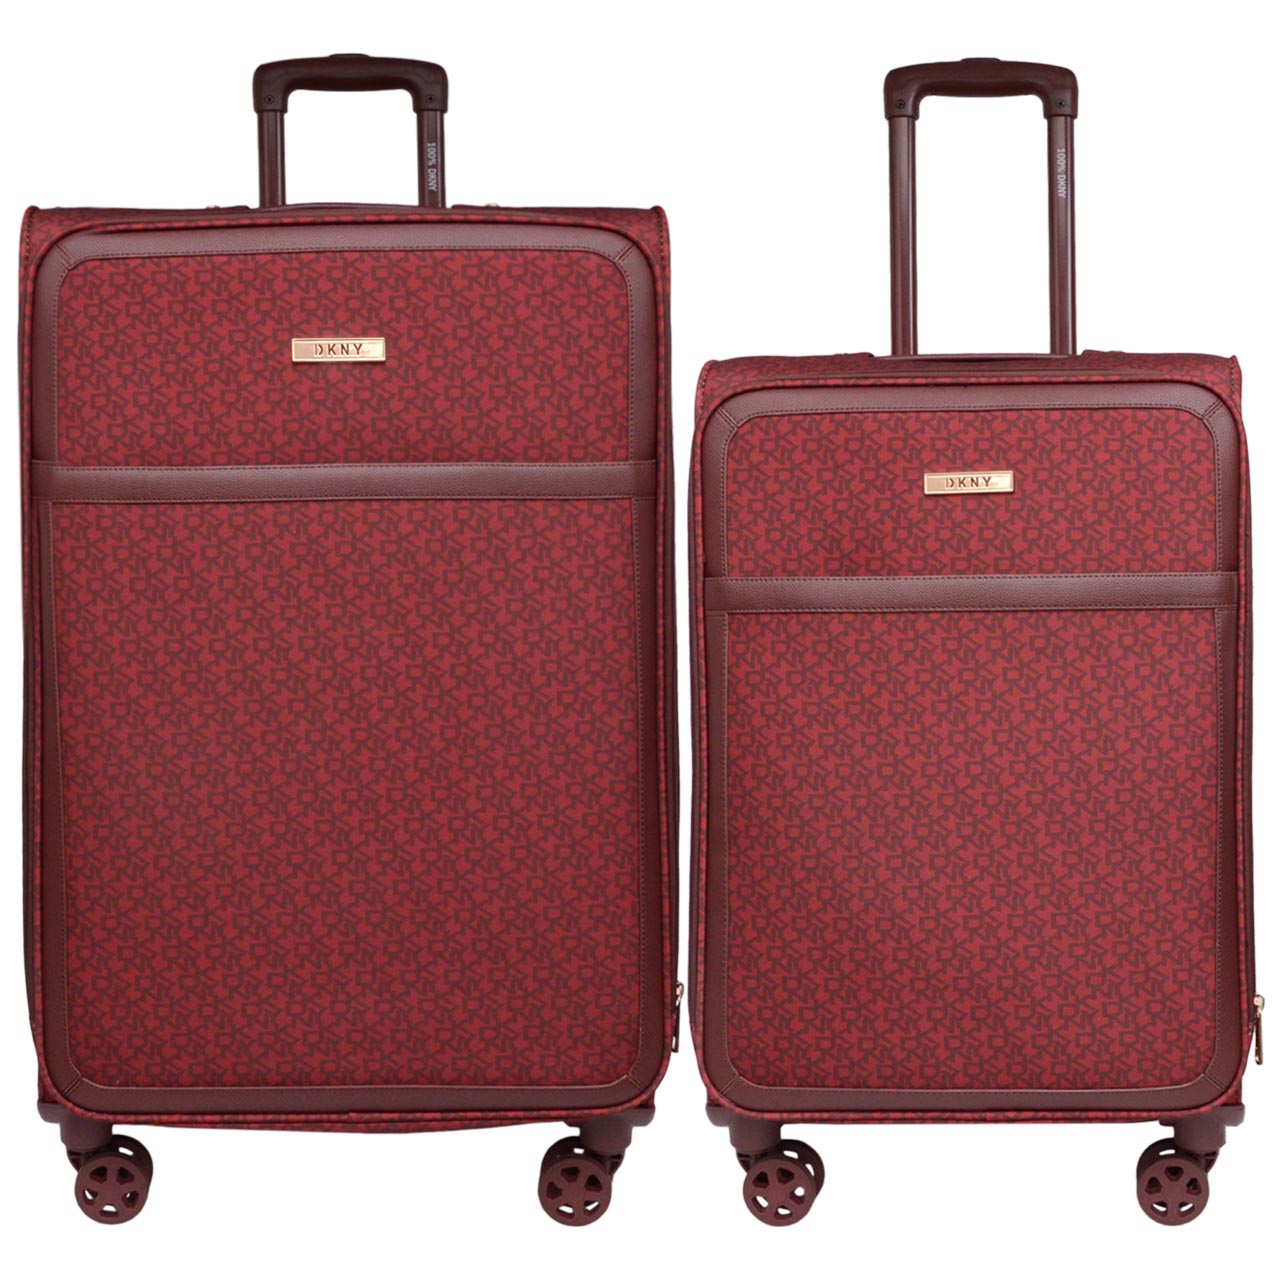 مجموعه دو عددی چمدان دی کی ان وای مدل VS9 سایز بزرگ و متوسط